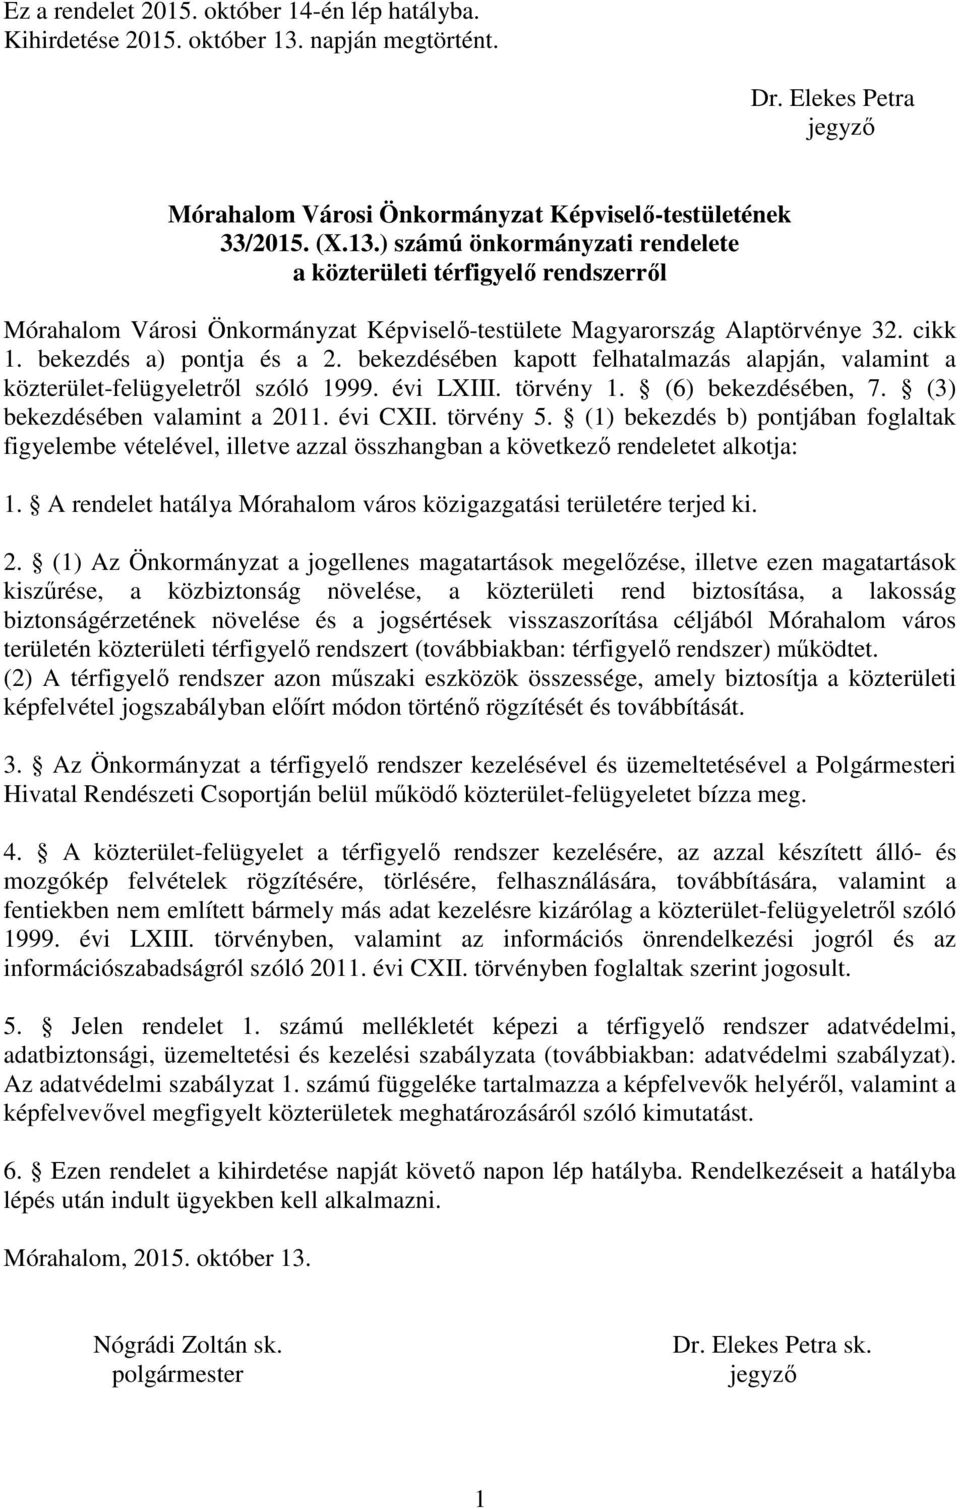 ) számú önkormányzati rendelete a közterületi térfigyelő rendszerről Mórahalom Városi Önkormányzat Képviselő-testülete Magyarország Alaptörvénye 32. cikk 1. bekezdés a) pontja és a 2.